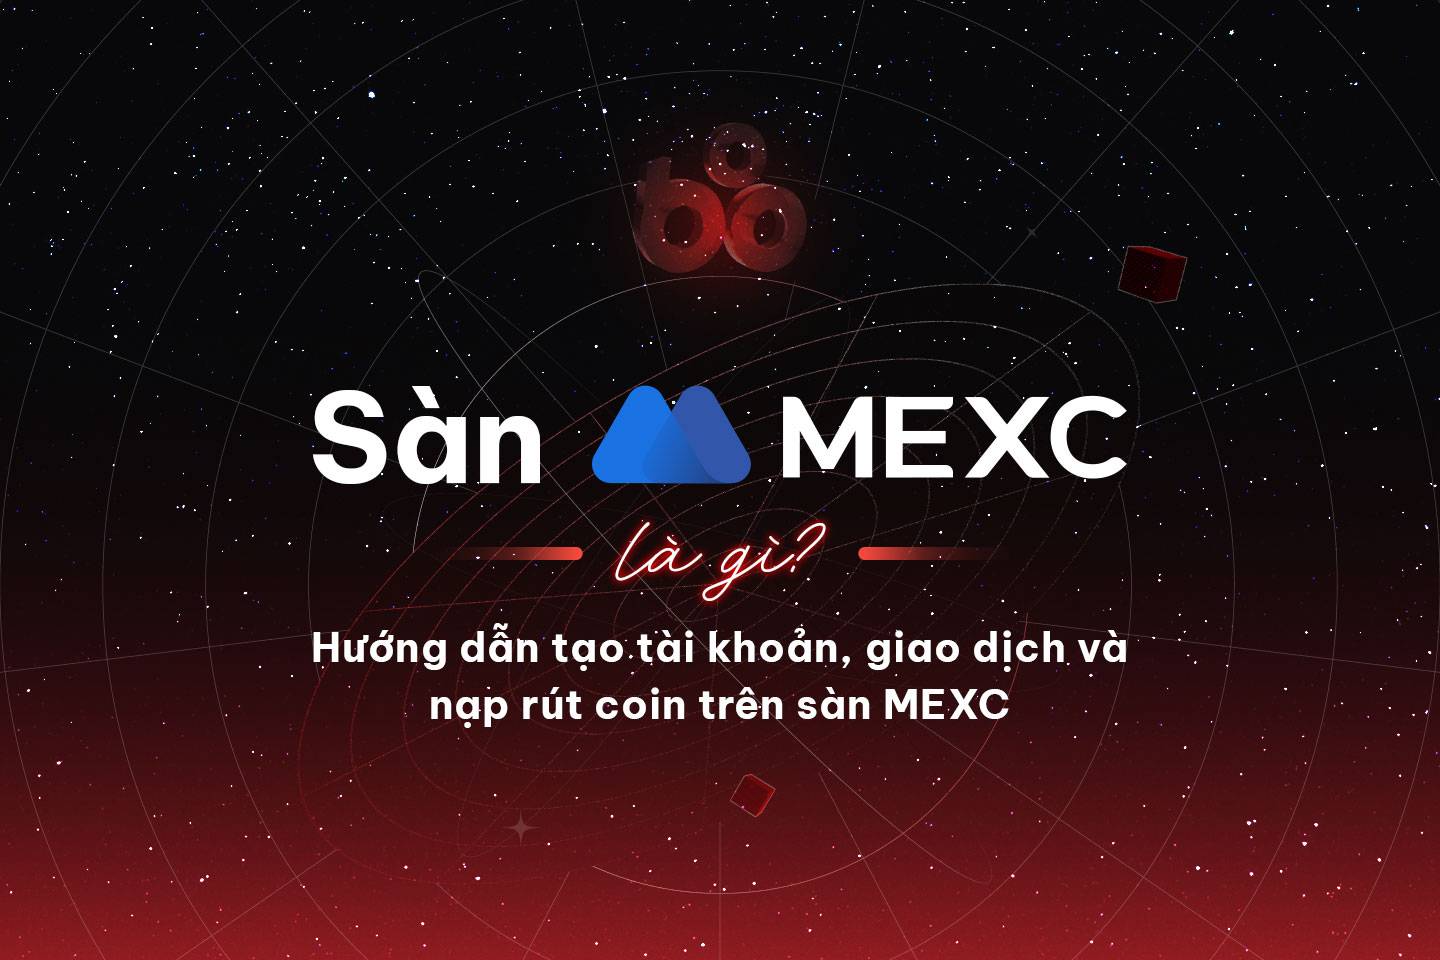 Sàn MEXC là gì? Hướng dẫn tạo tài khoản, giao dịch và nạp rút coin trên sàn MEXC